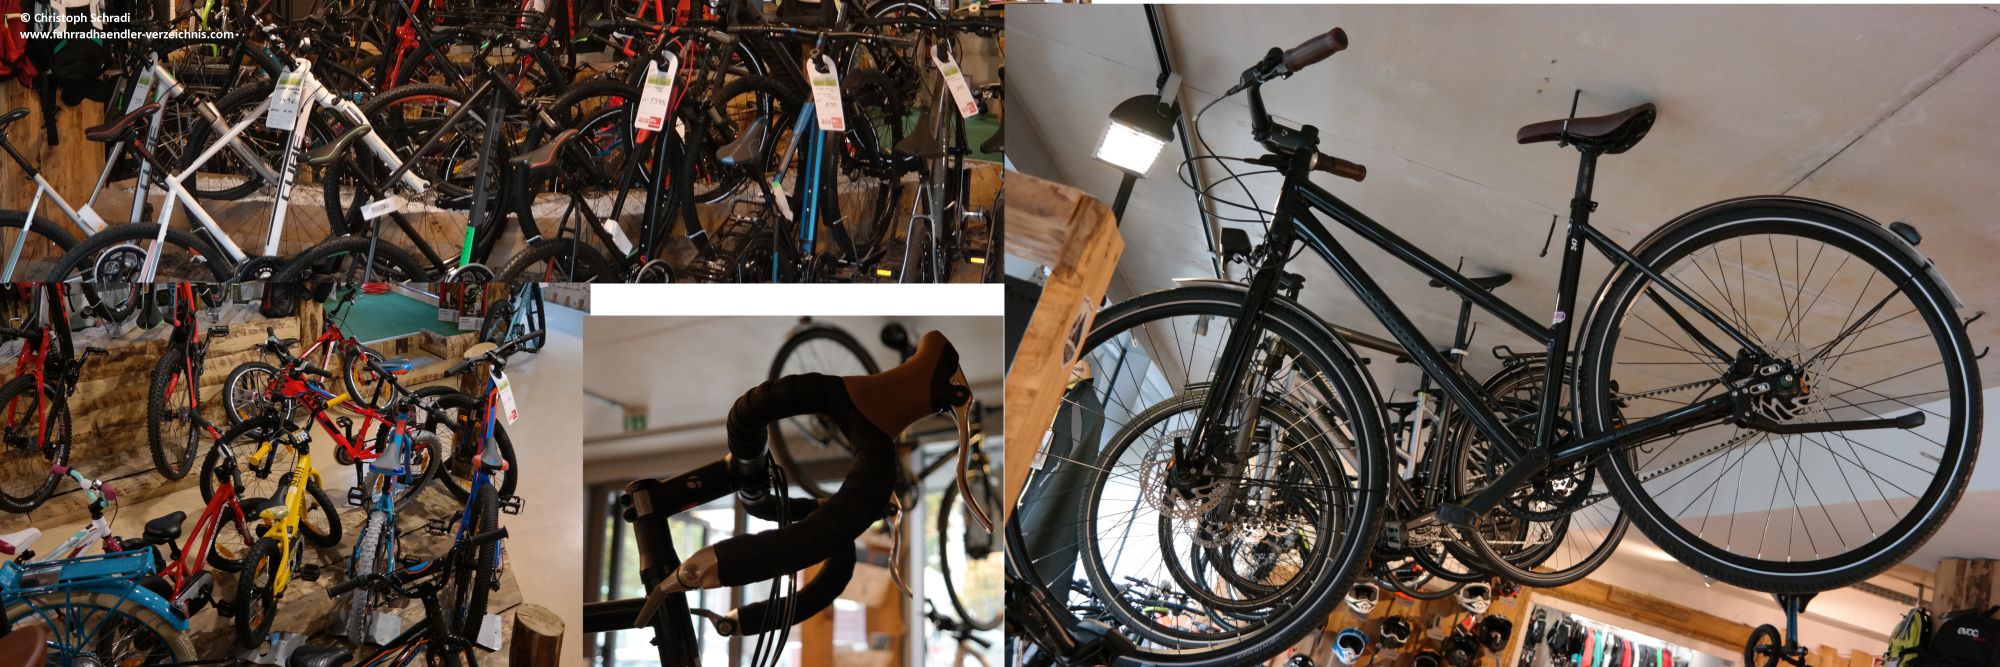 Der Stuttgarter Fahrradladen Bikes n Boards bietet neben Mountainbikes auch fast jede andere Fahrradgattung an